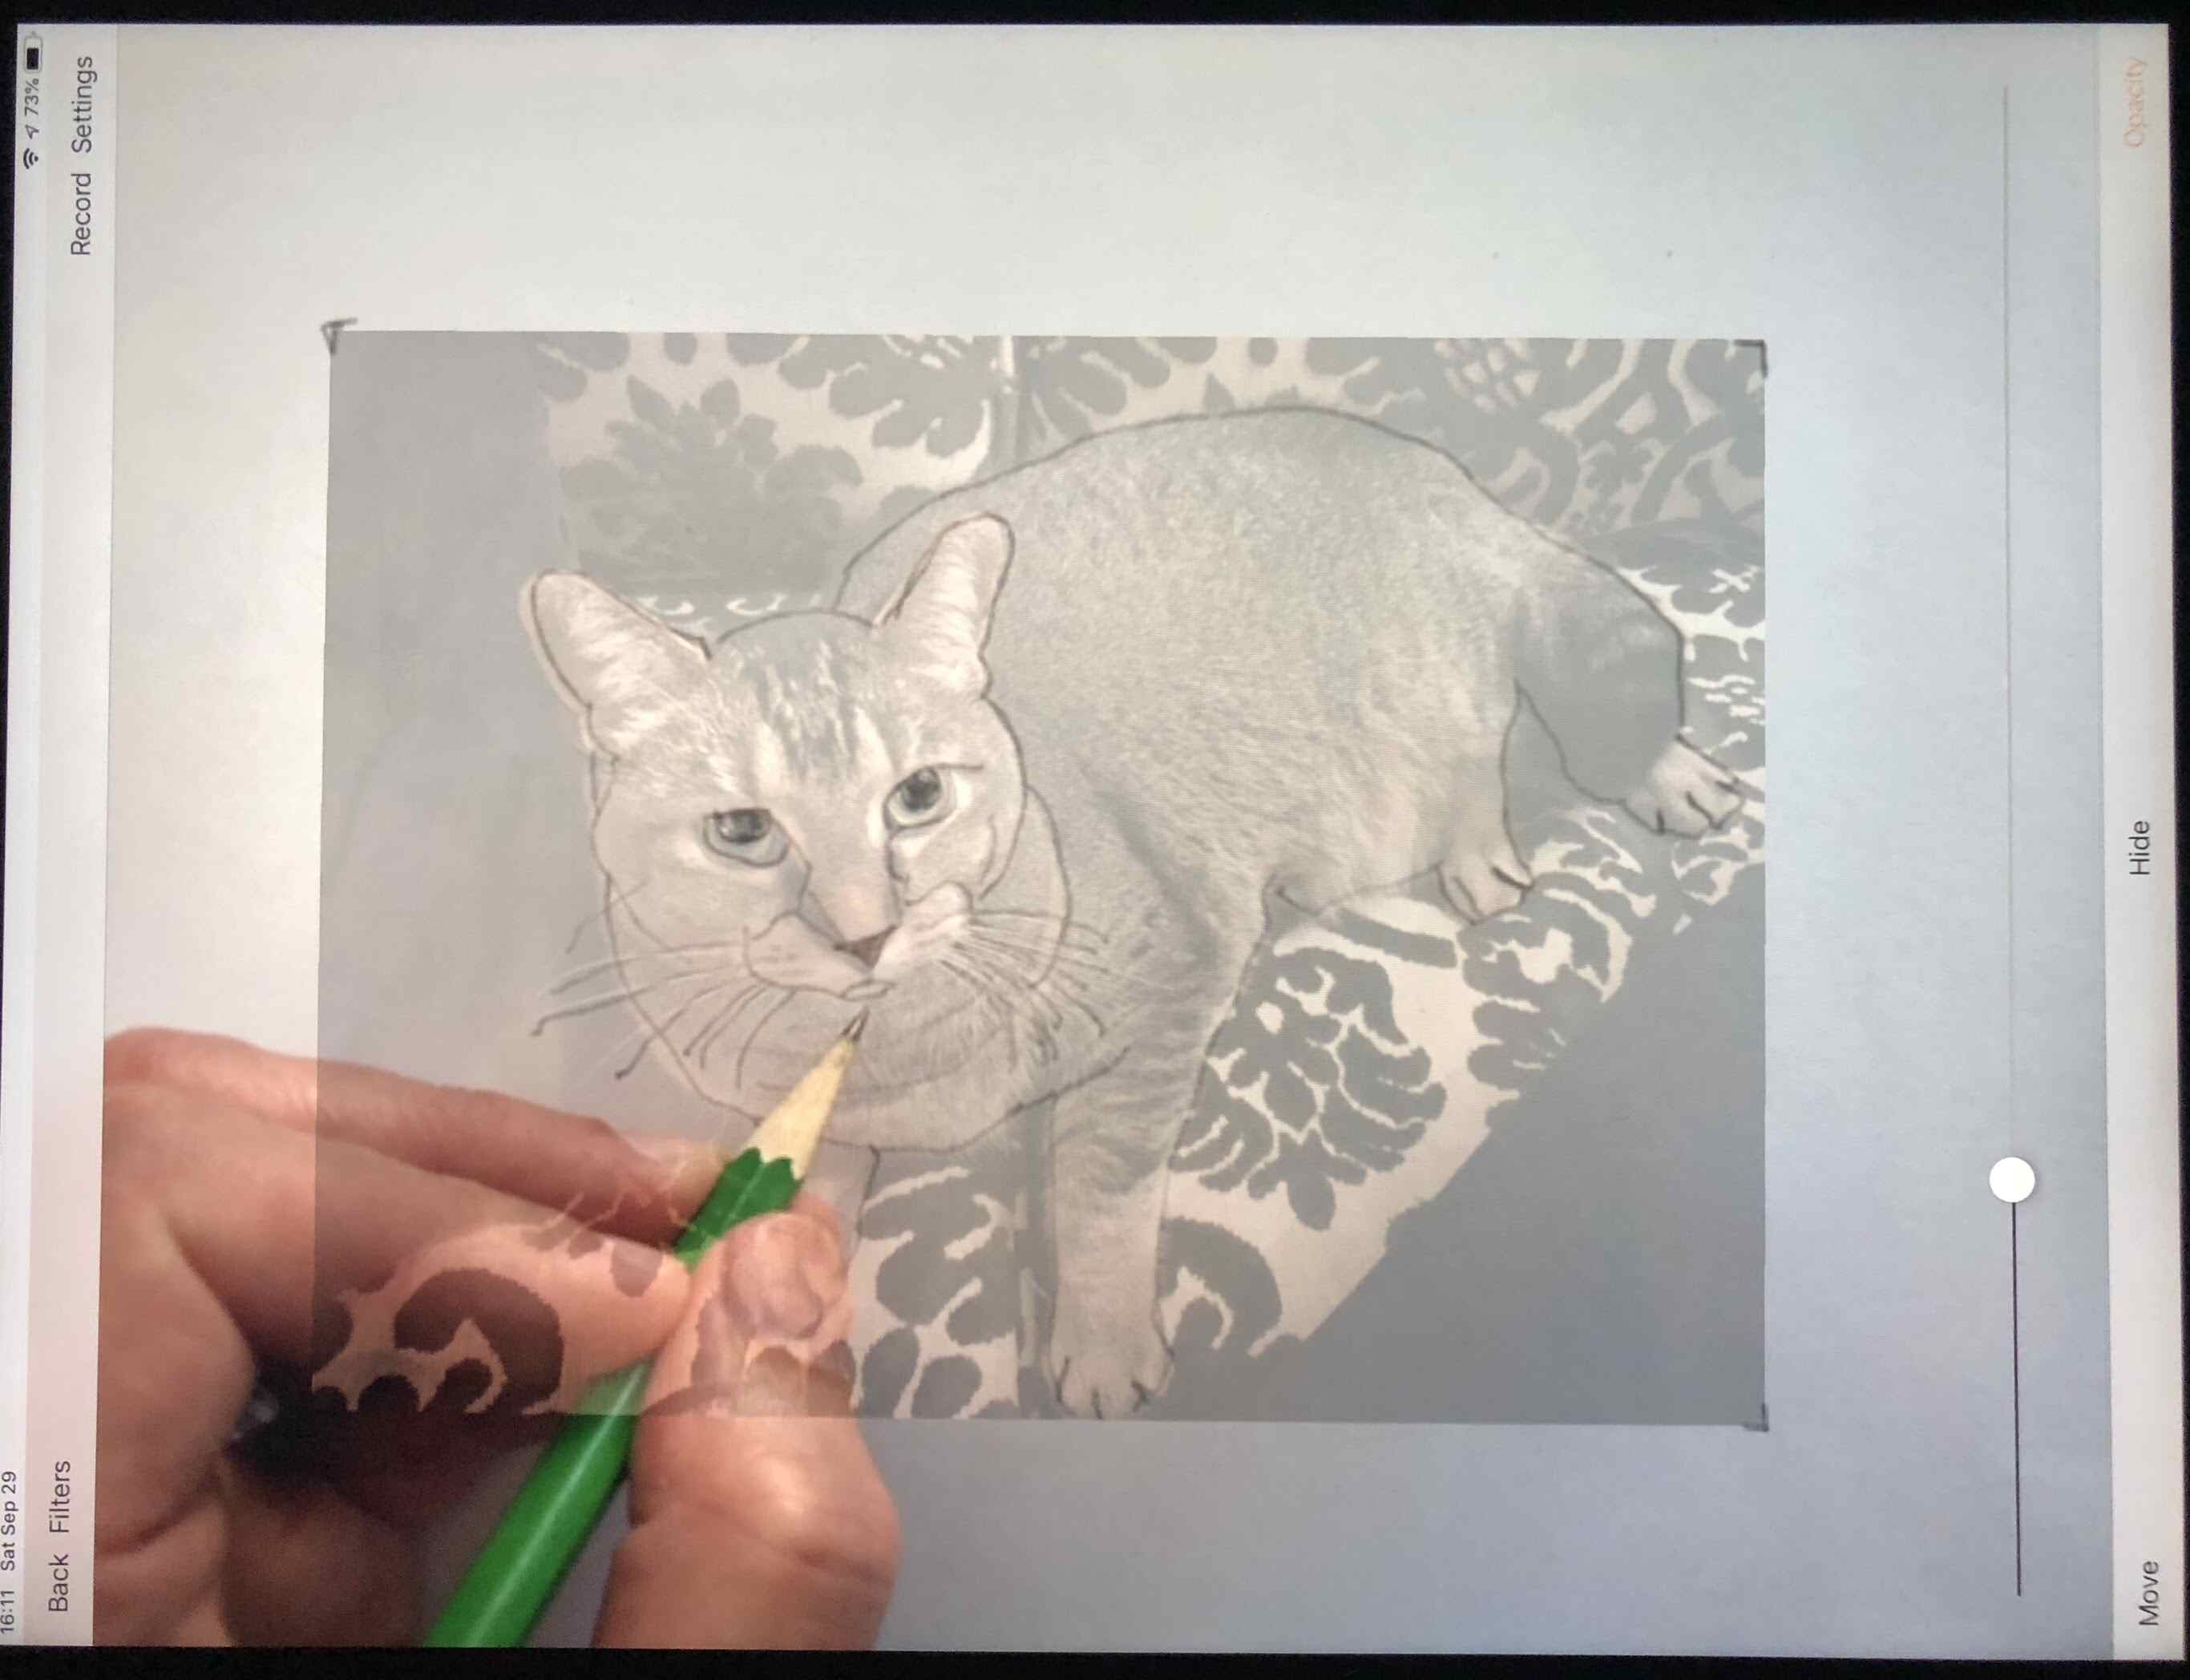 Foto do aplicativo Da Vinci, mostrando a foto de um gato na tela do iPad, com papel e mão com lápis abaixo, desenhando o gato